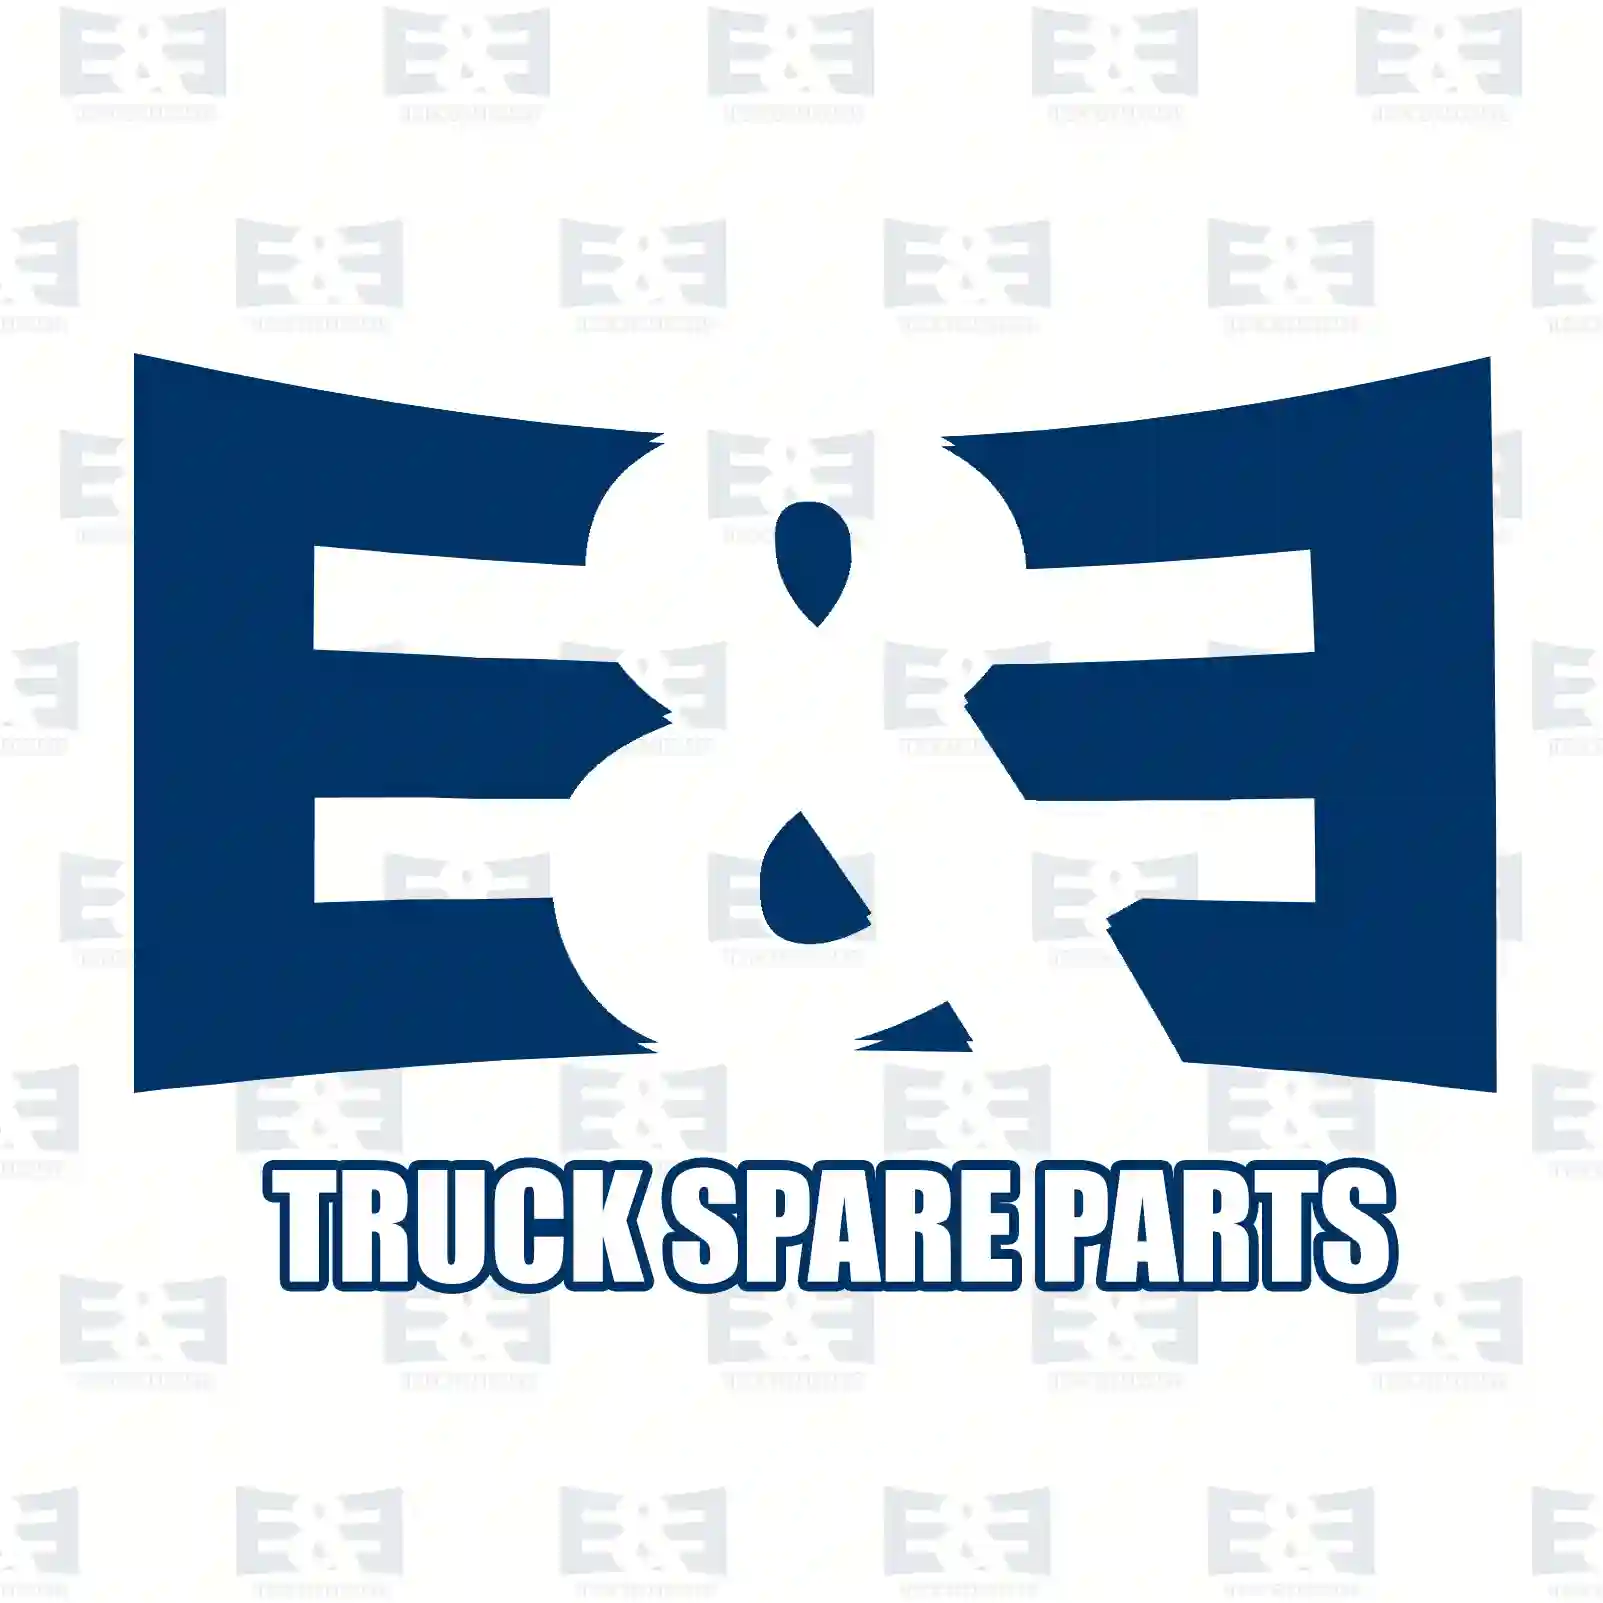 Mounting kit, brake pads, 2E2295399, 0004200882, 0004202482, 6274200186 ||  2E2295399 E&E Truck Spare Parts | Truck Spare Parts, Auotomotive Spare Parts Mounting kit, brake pads, 2E2295399, 0004200882, 0004202482, 6274200186 ||  2E2295399 E&E Truck Spare Parts | Truck Spare Parts, Auotomotive Spare Parts